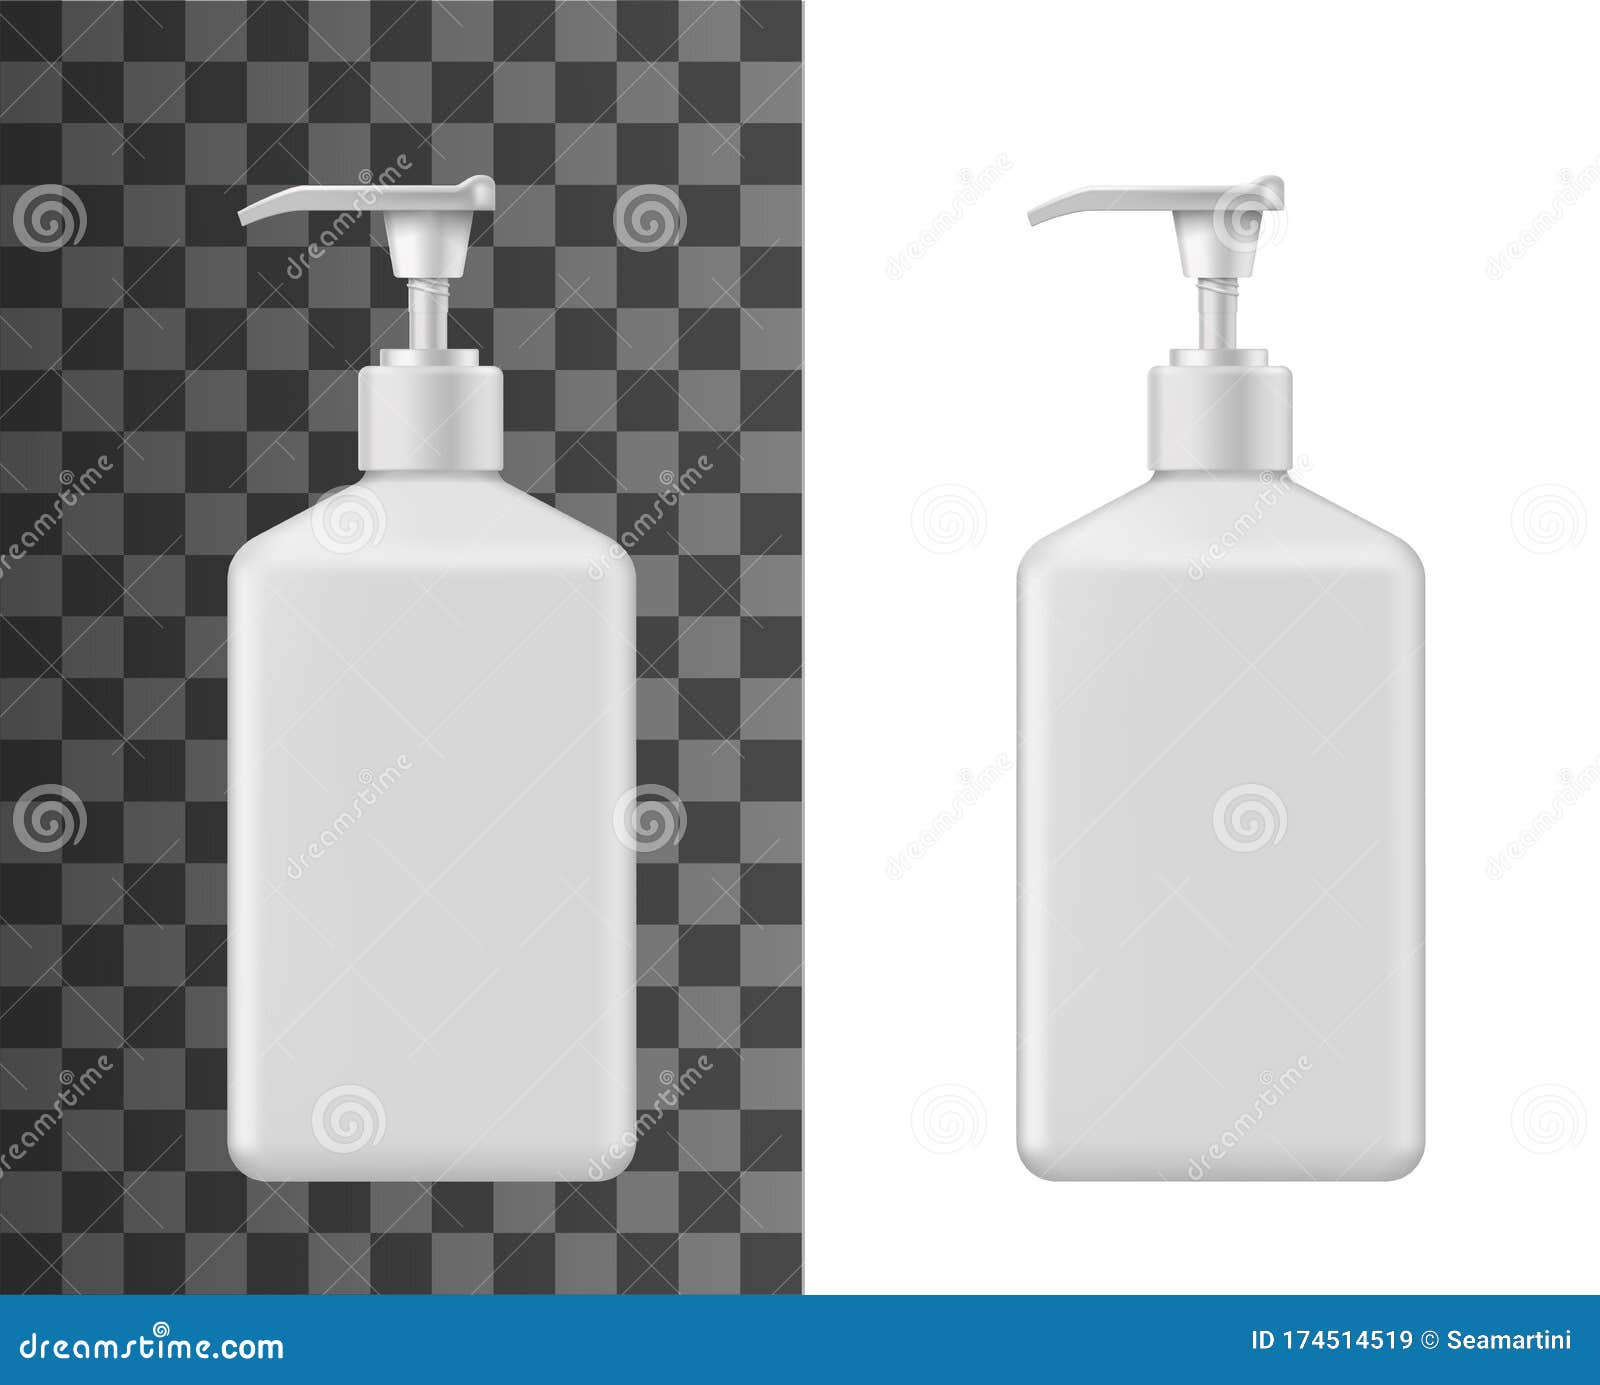 Hand Wash Bottle 3d Model Free Download